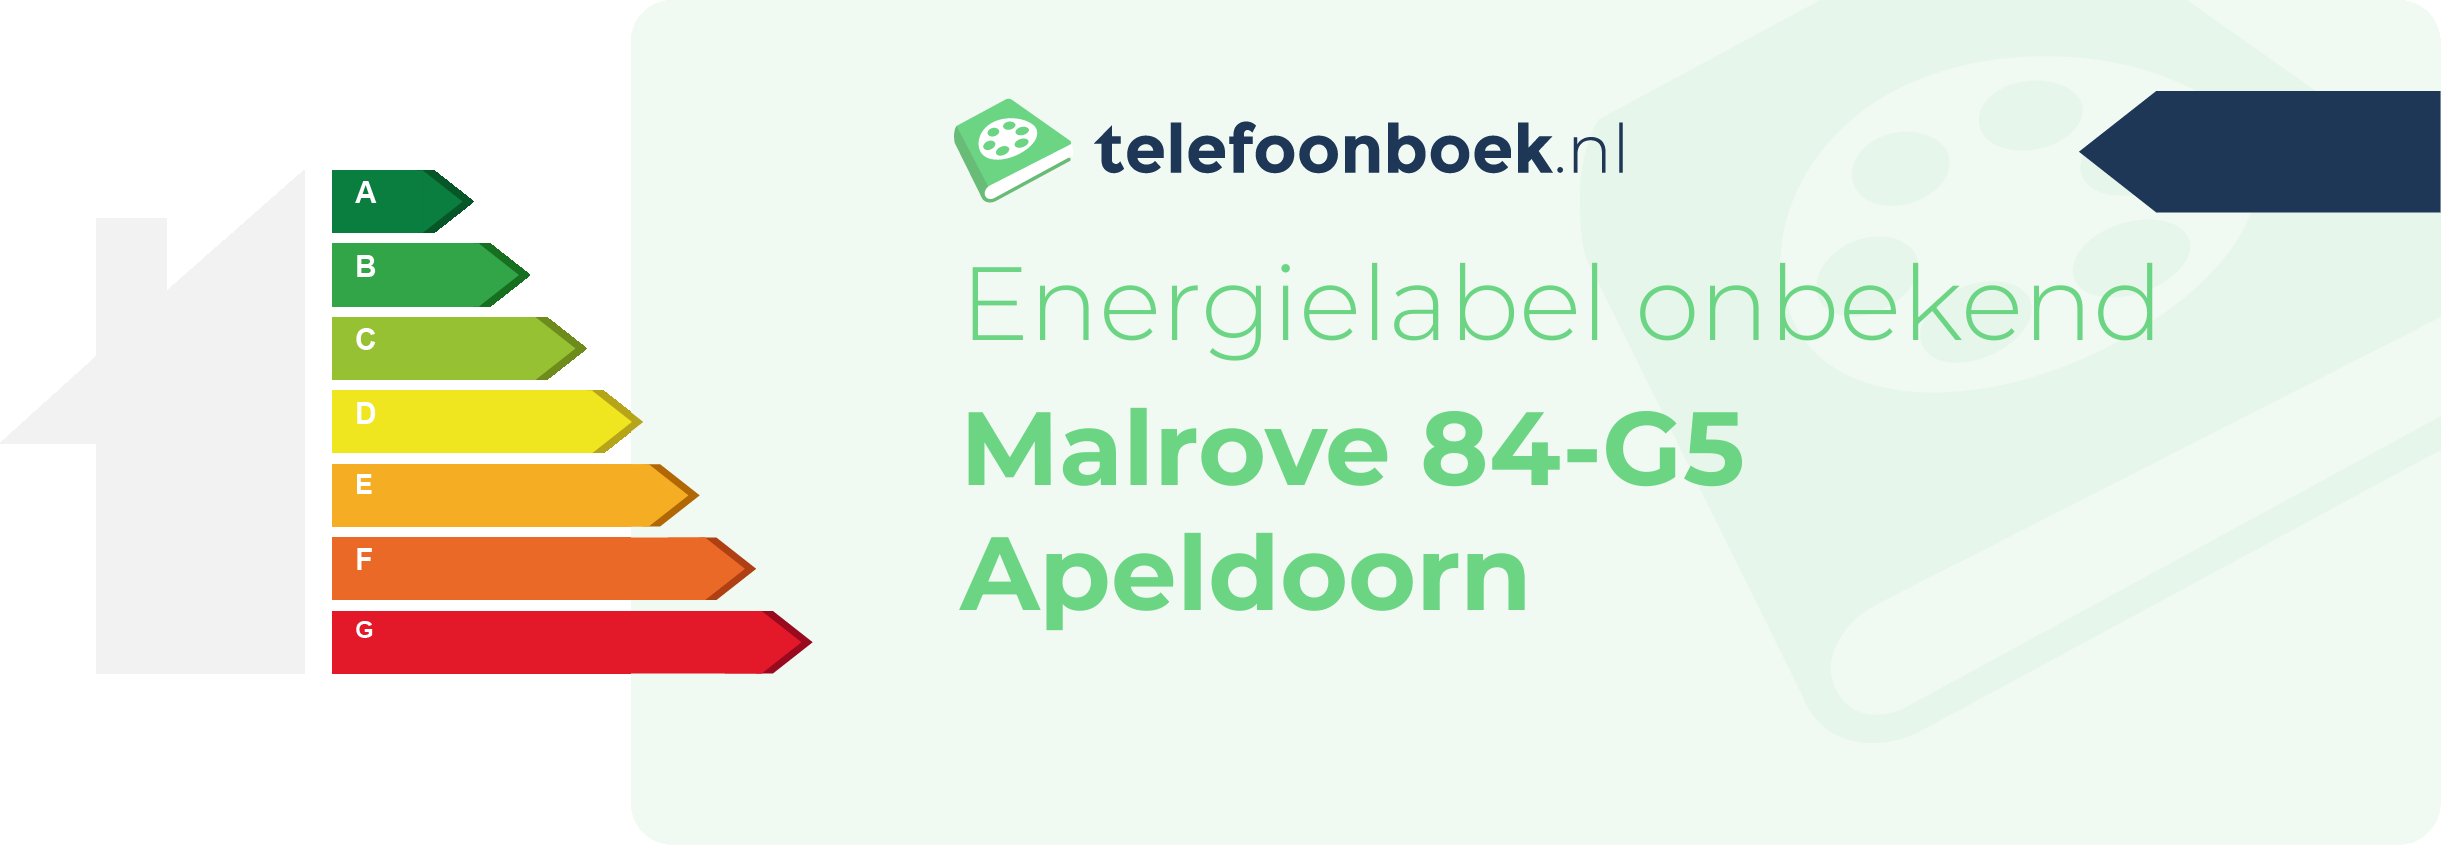 Energielabel Malrove 84-G5 Apeldoorn